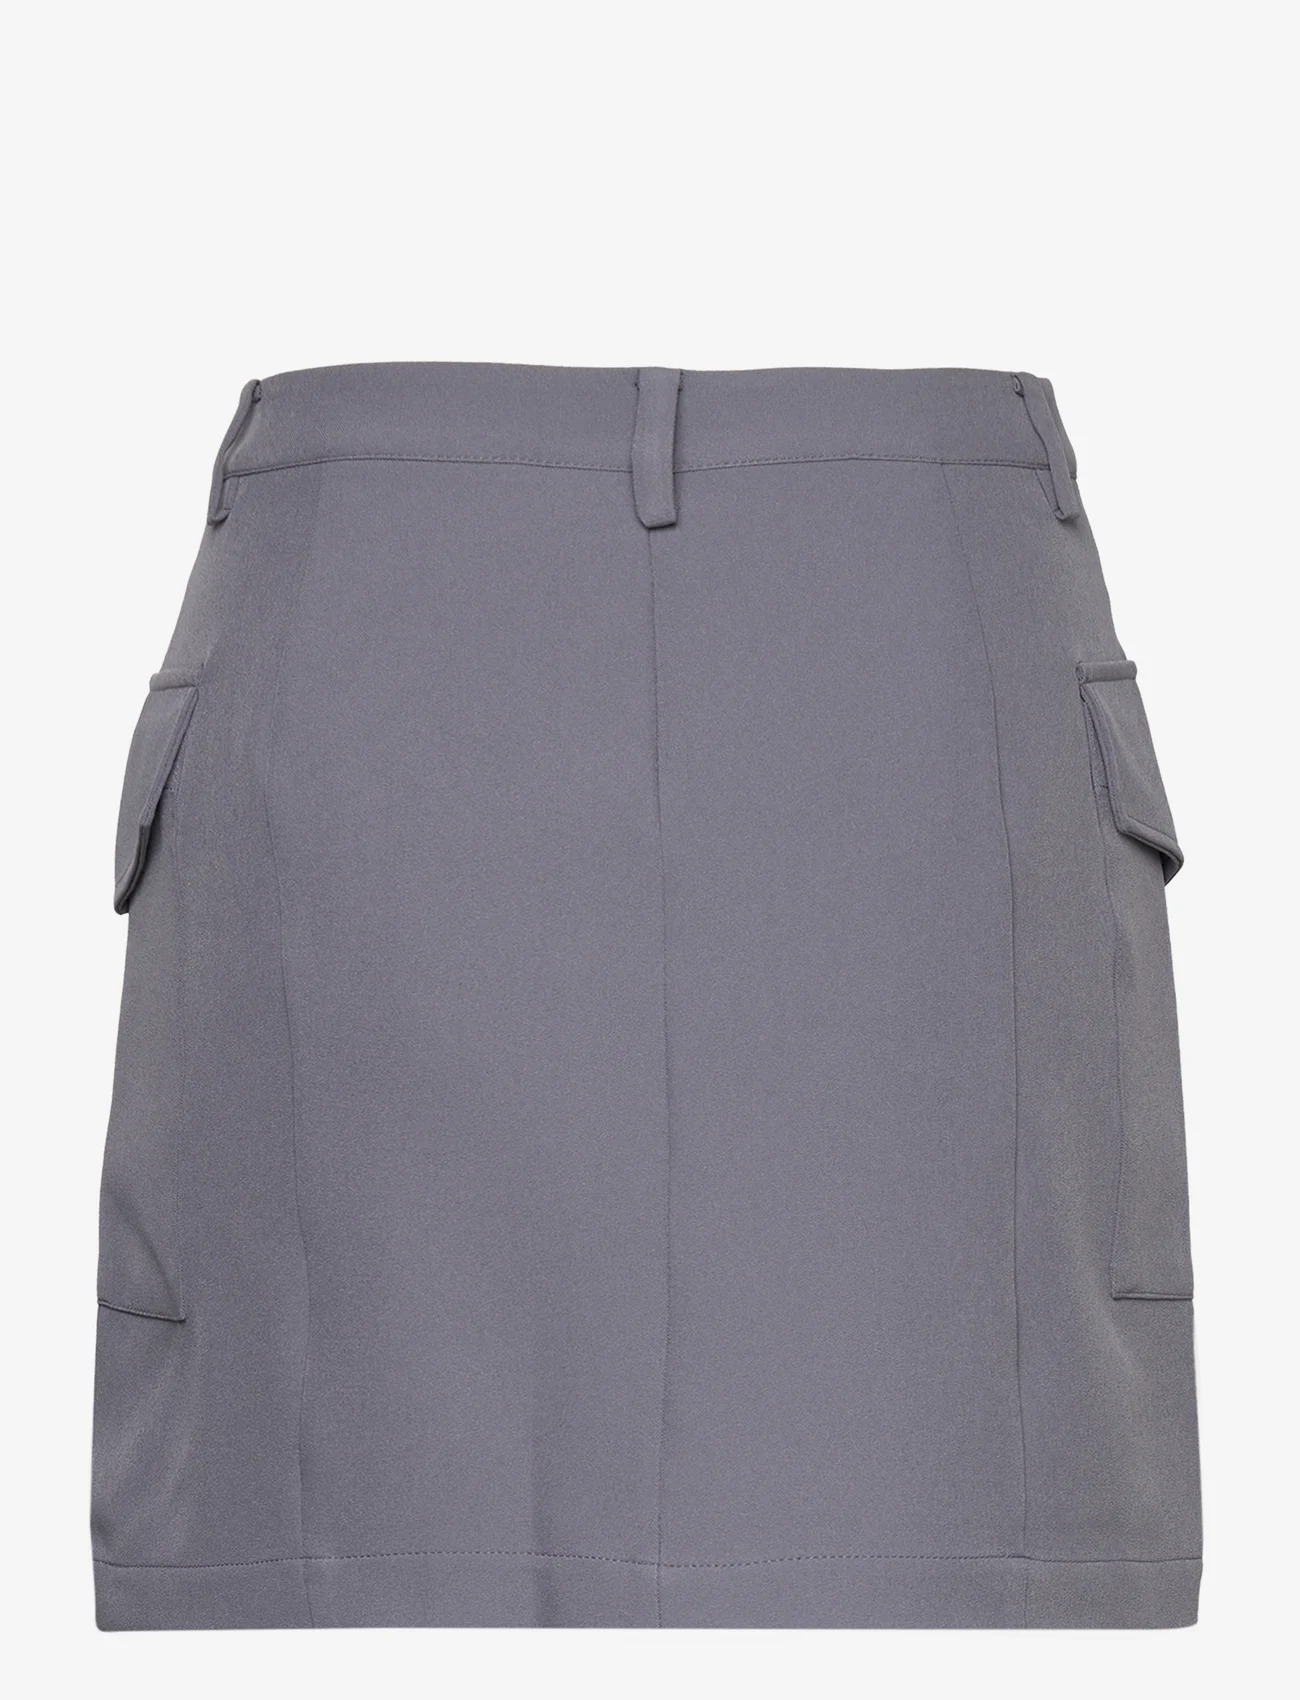 bzr - VibeBZCargo miniskirt - short skirts - grey - 1